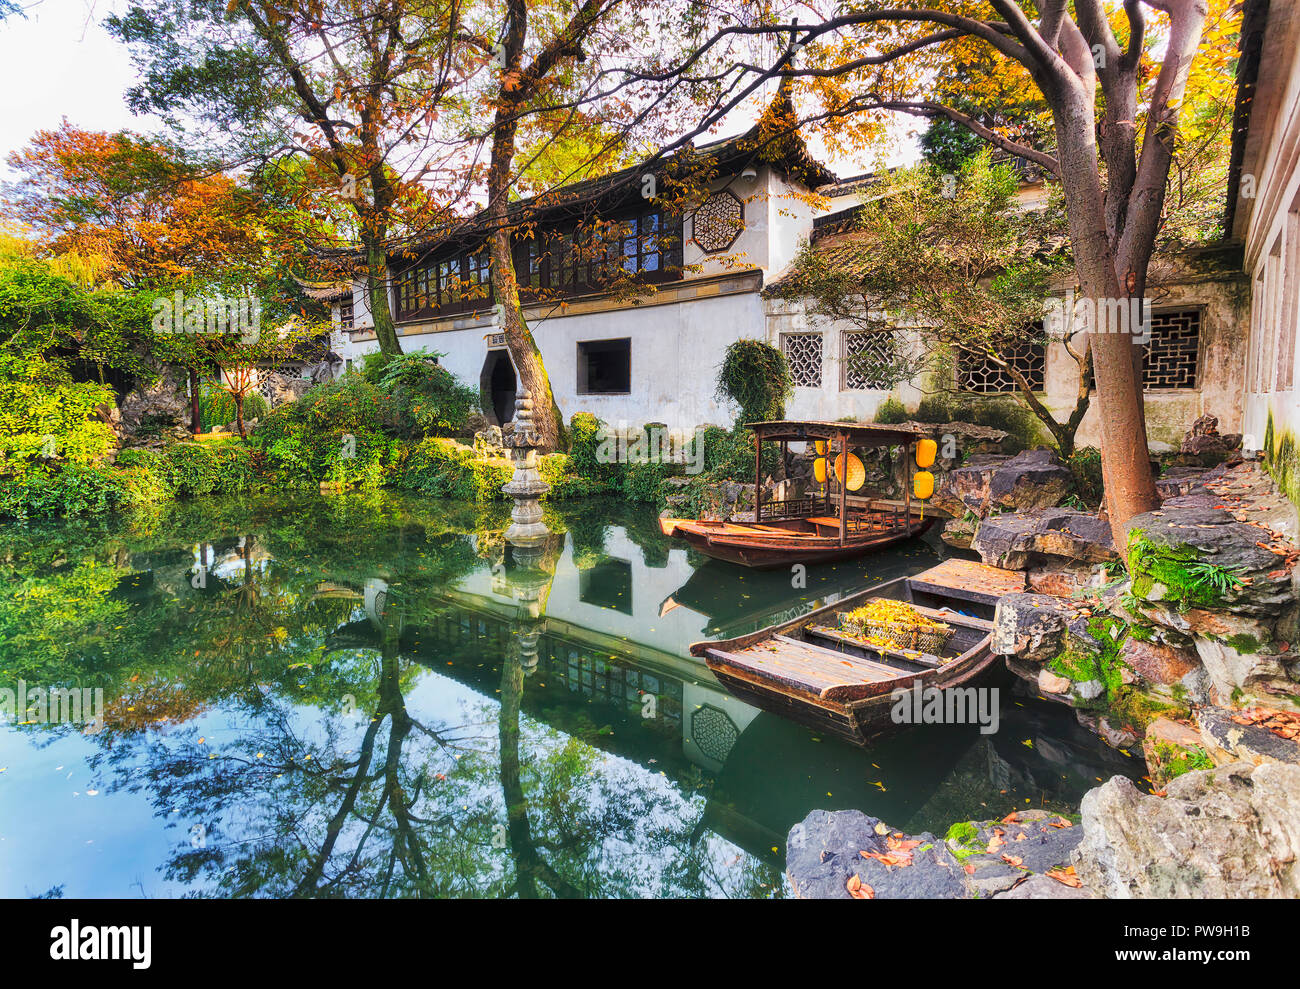 Tradizionale storico giardino botanico nella città cinese di Suzhou vista interna di architettura attorno ancora stagno con barche e alberi. Foto Stock